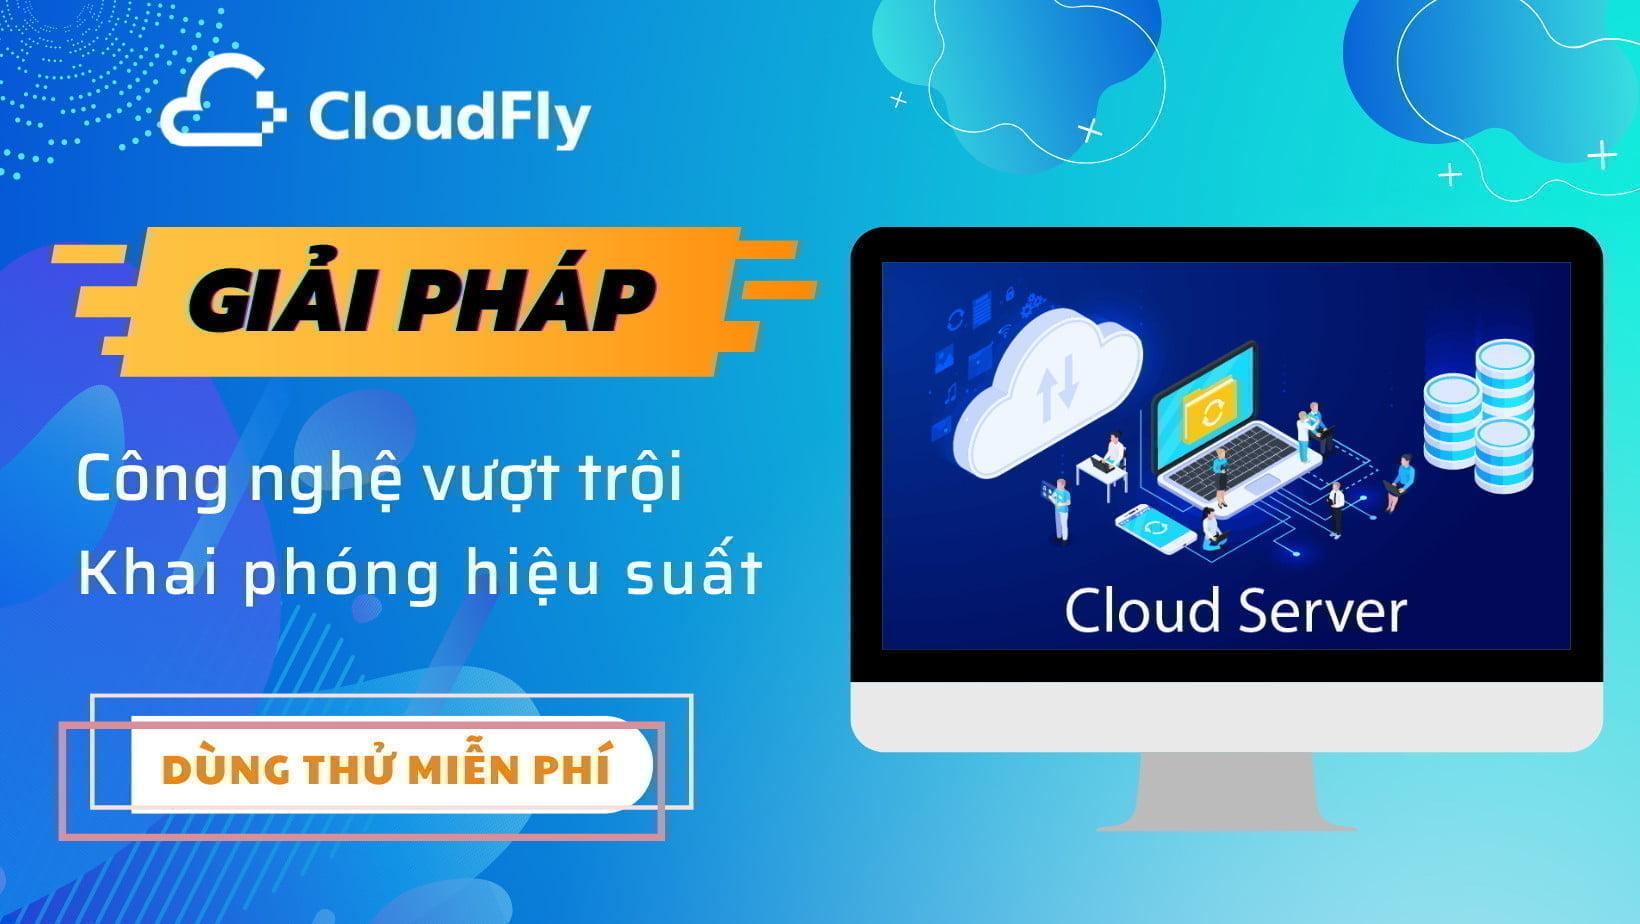 cloudfly cung cấp tên miền chất lượng giá rẻ